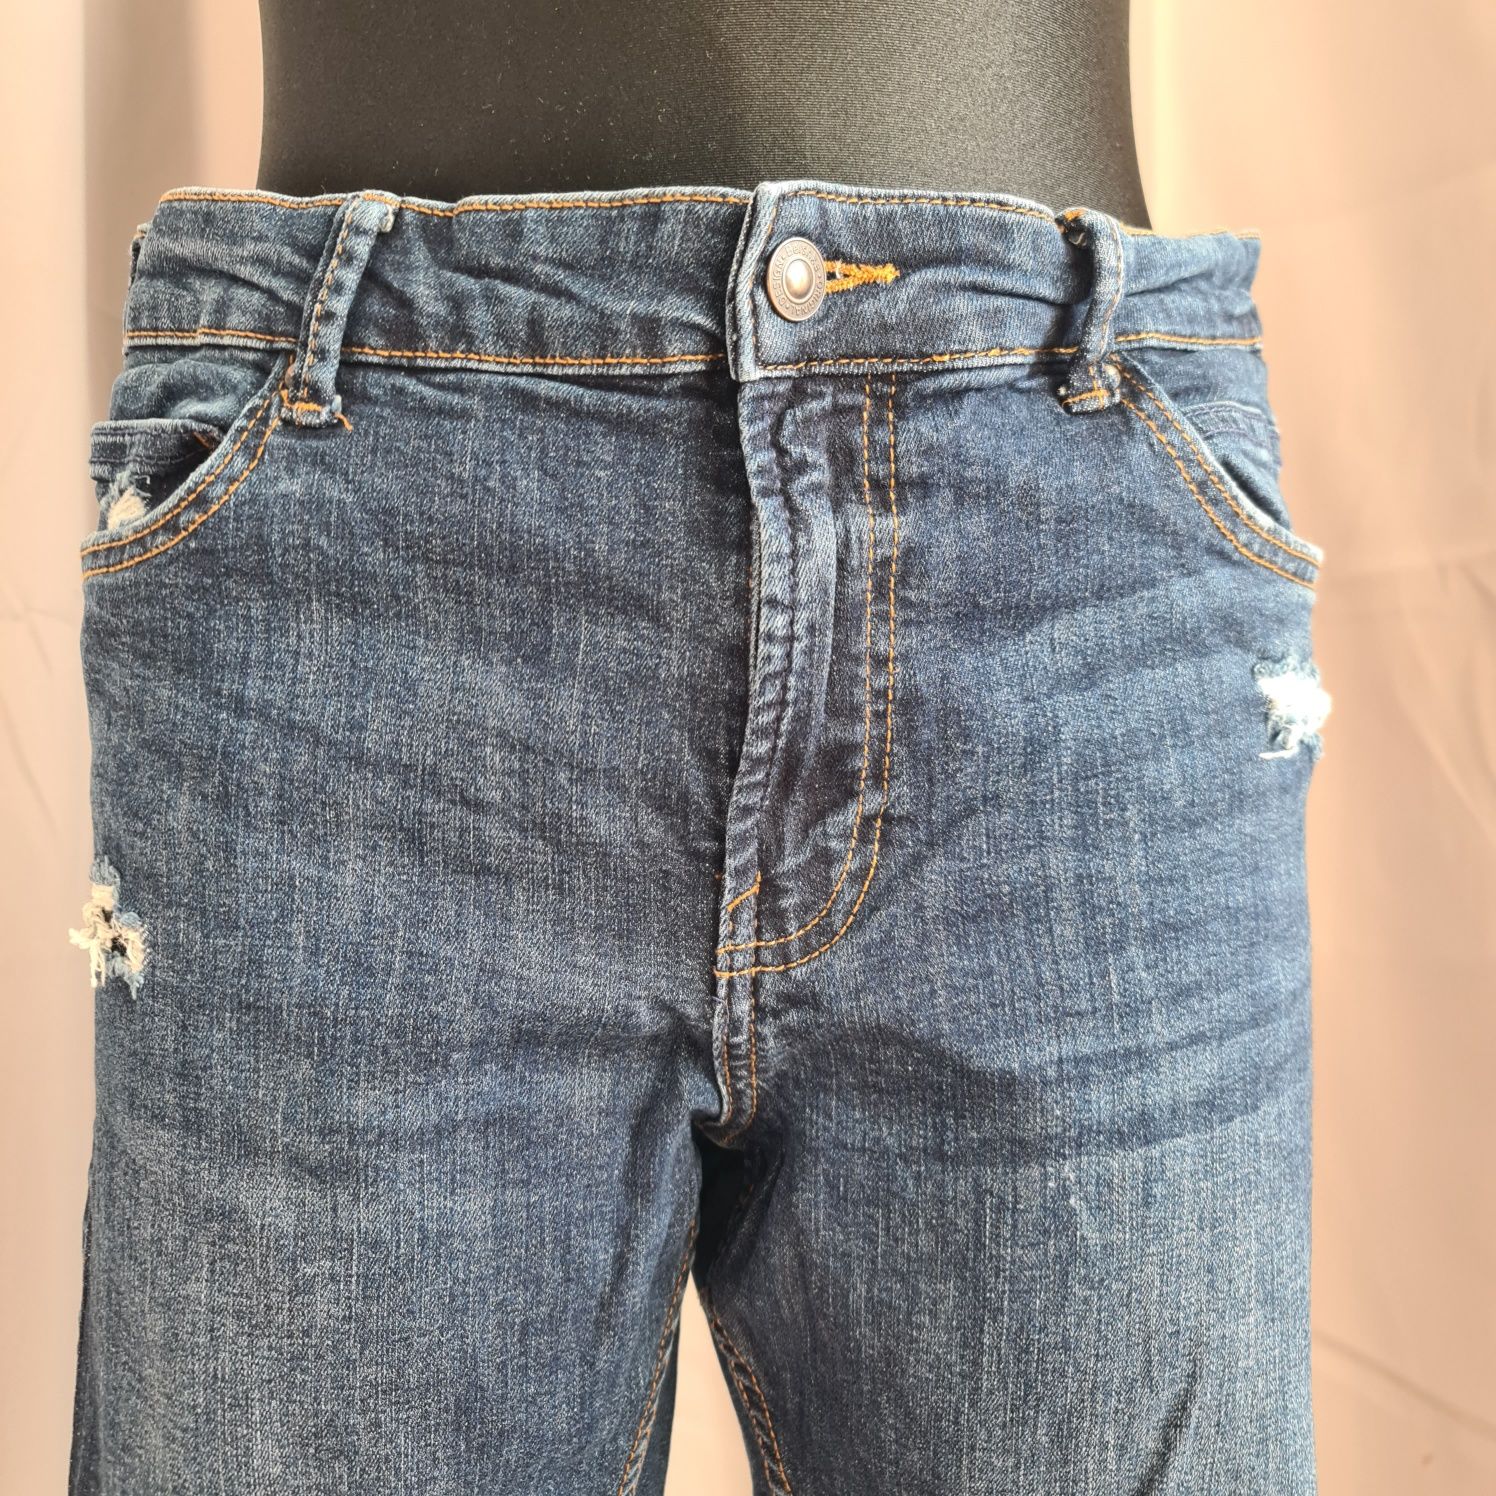 Spodnie jeans skinny Bershka, rozmiar 42, spodnie z dziurami